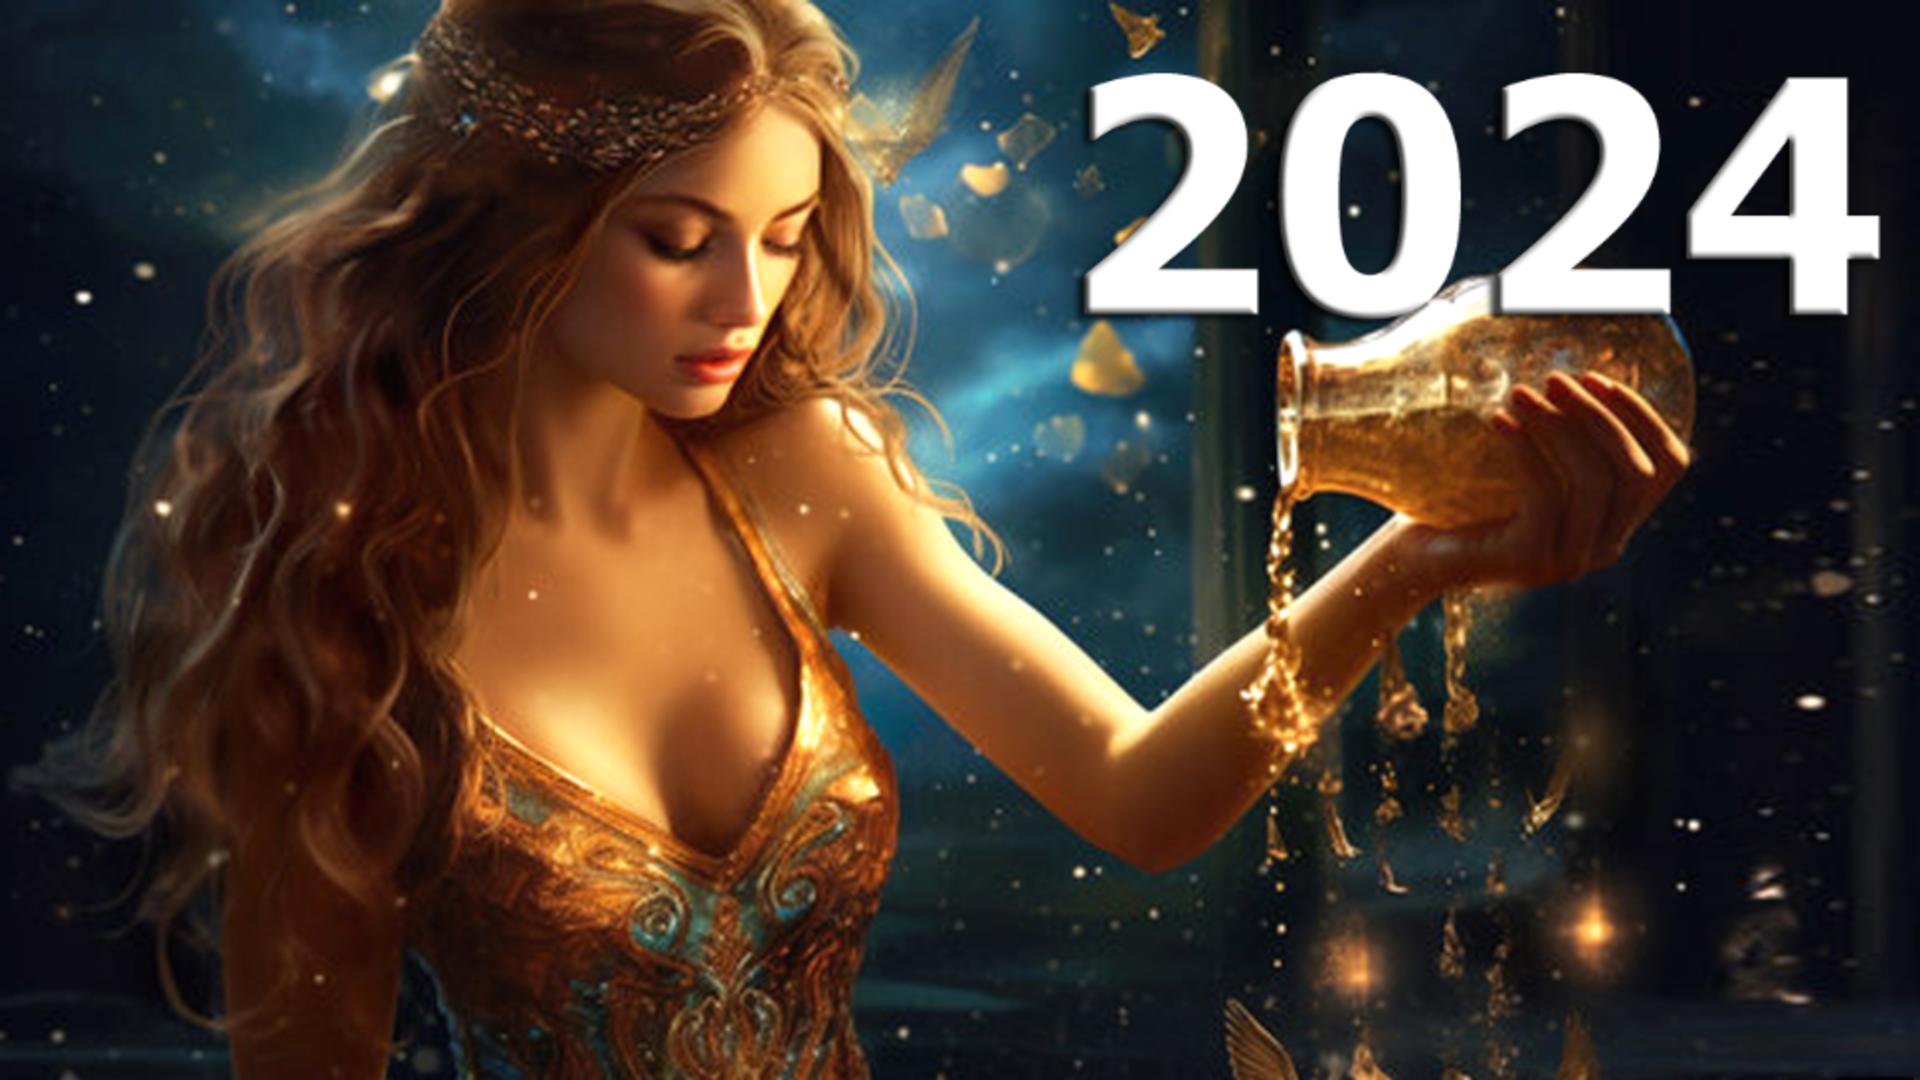 Horoscopul anului 2024 – Vărsător. Un an în care vei avea de luat decizii importante. Astrele favorizează relații autentice construite pe respect reciproc